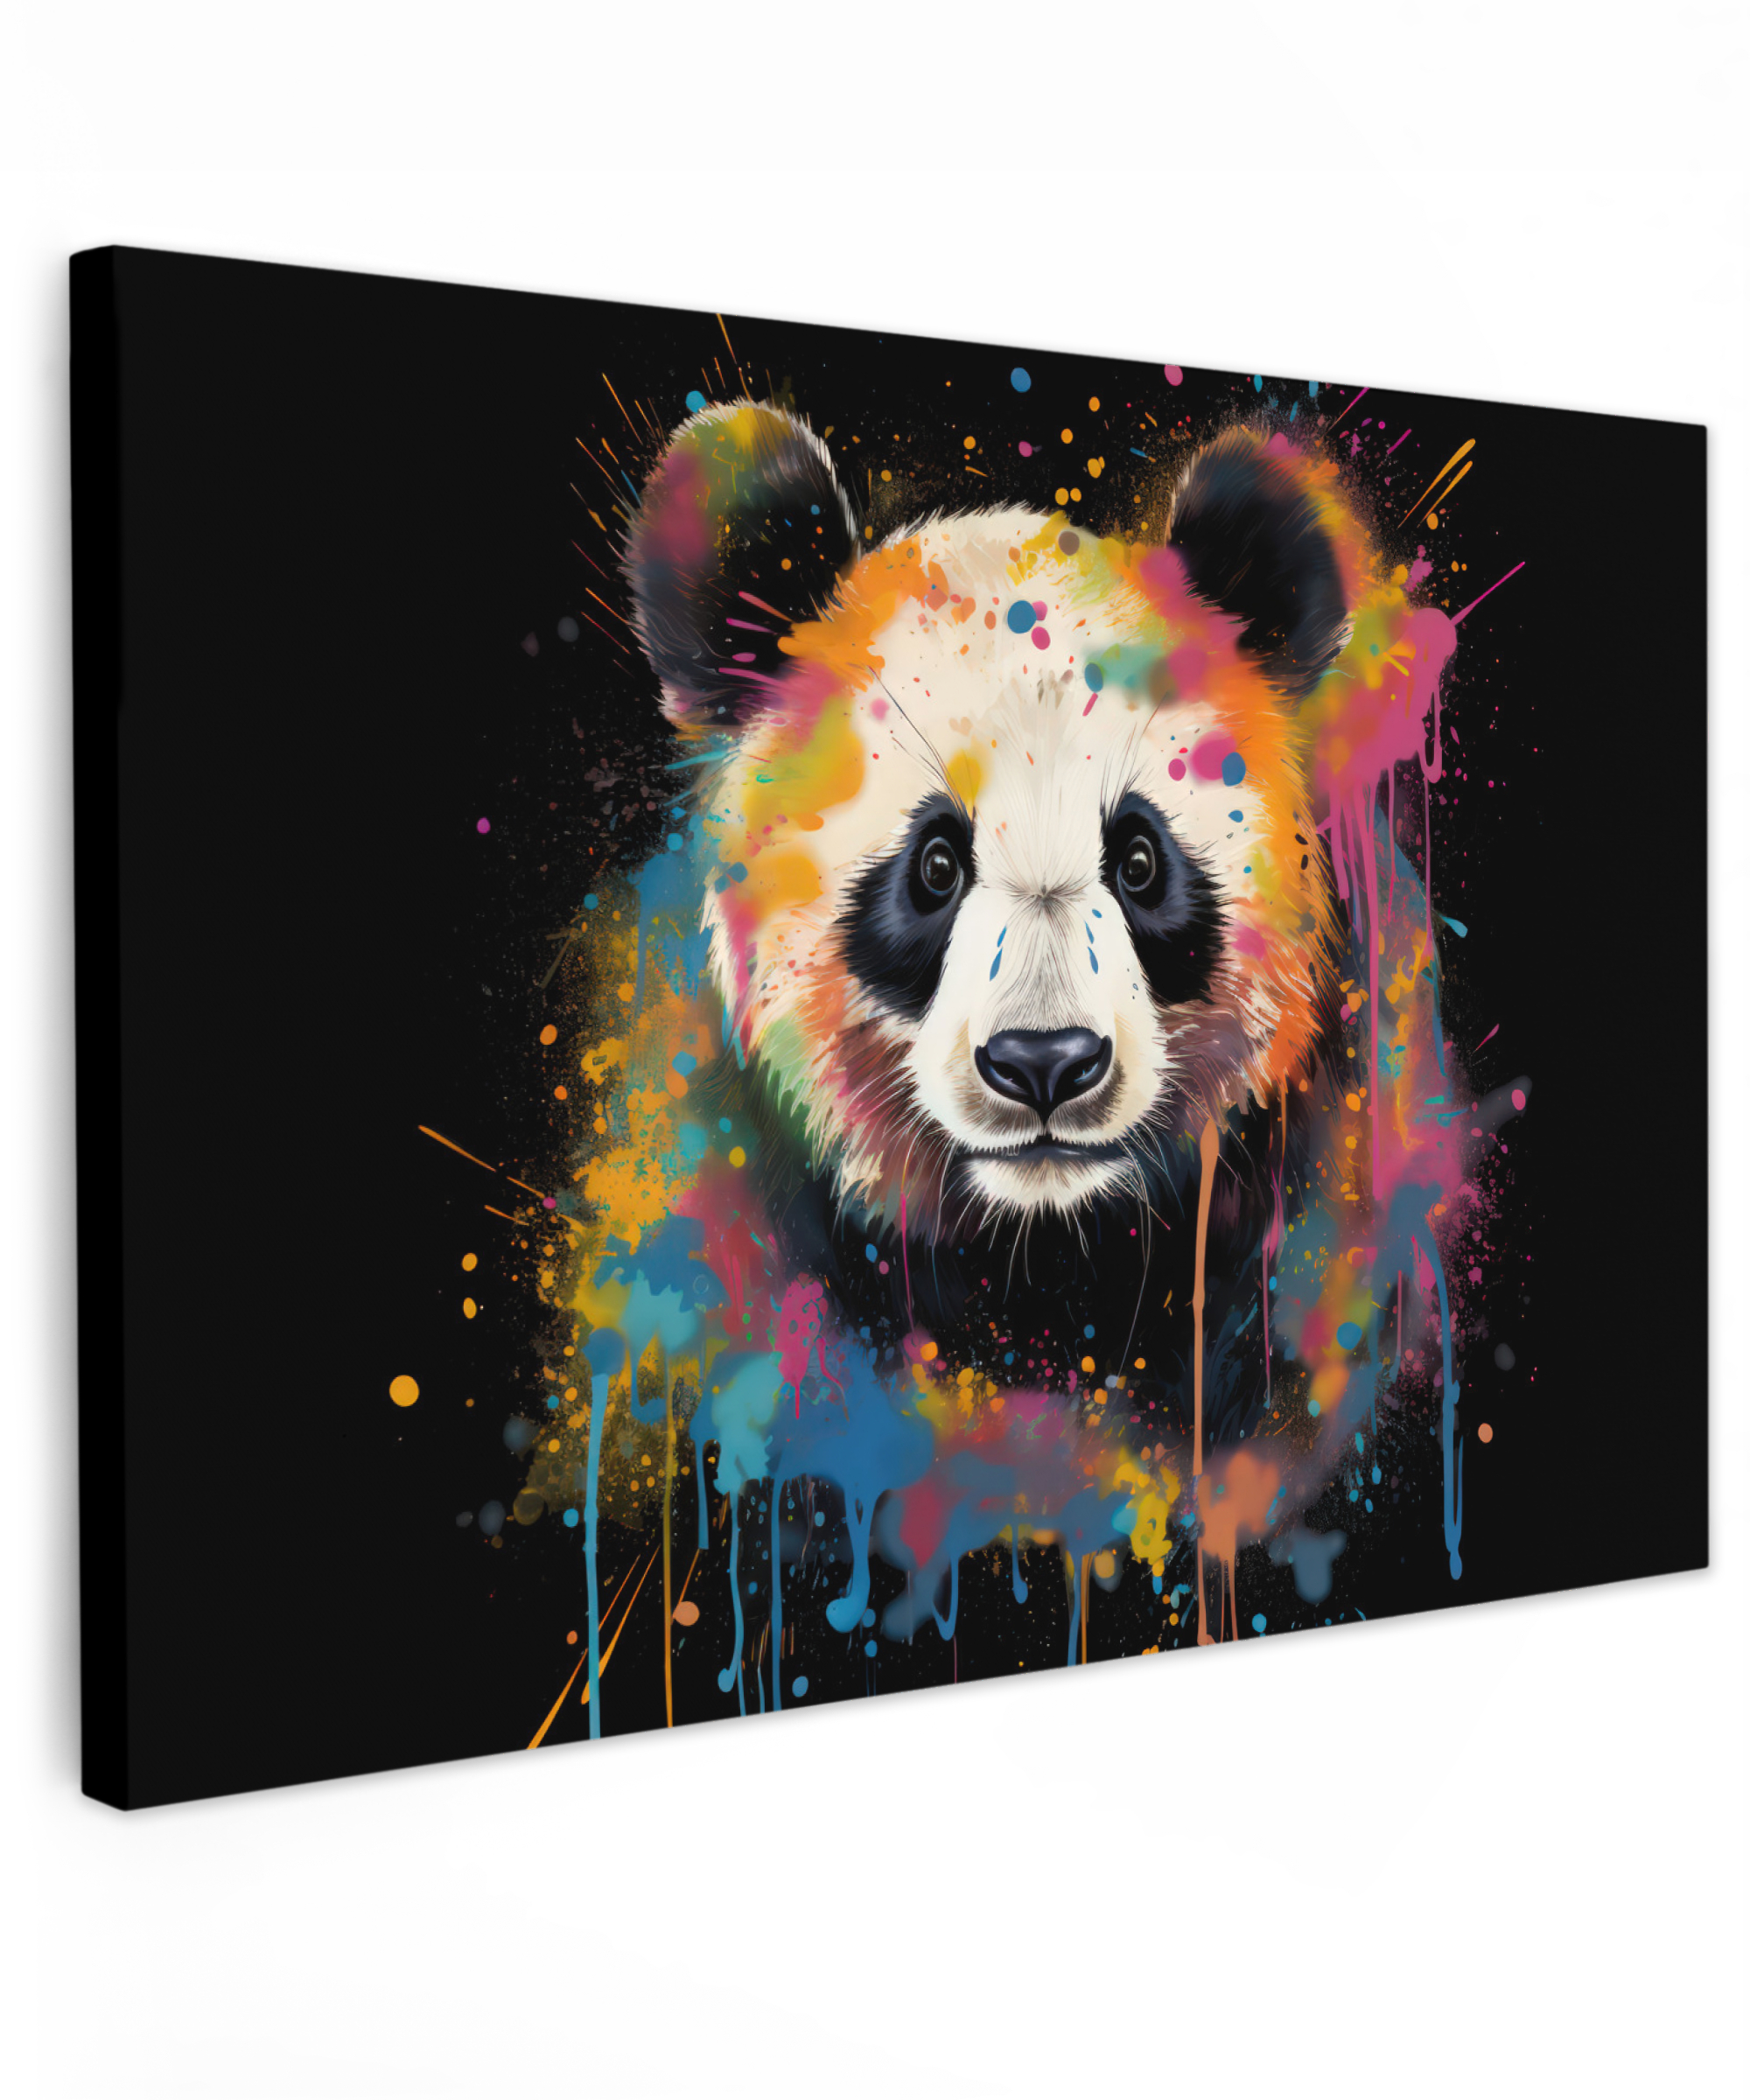 Tableau sur toile - Panda - Graffiti - Animaux - Noir - Couleurs